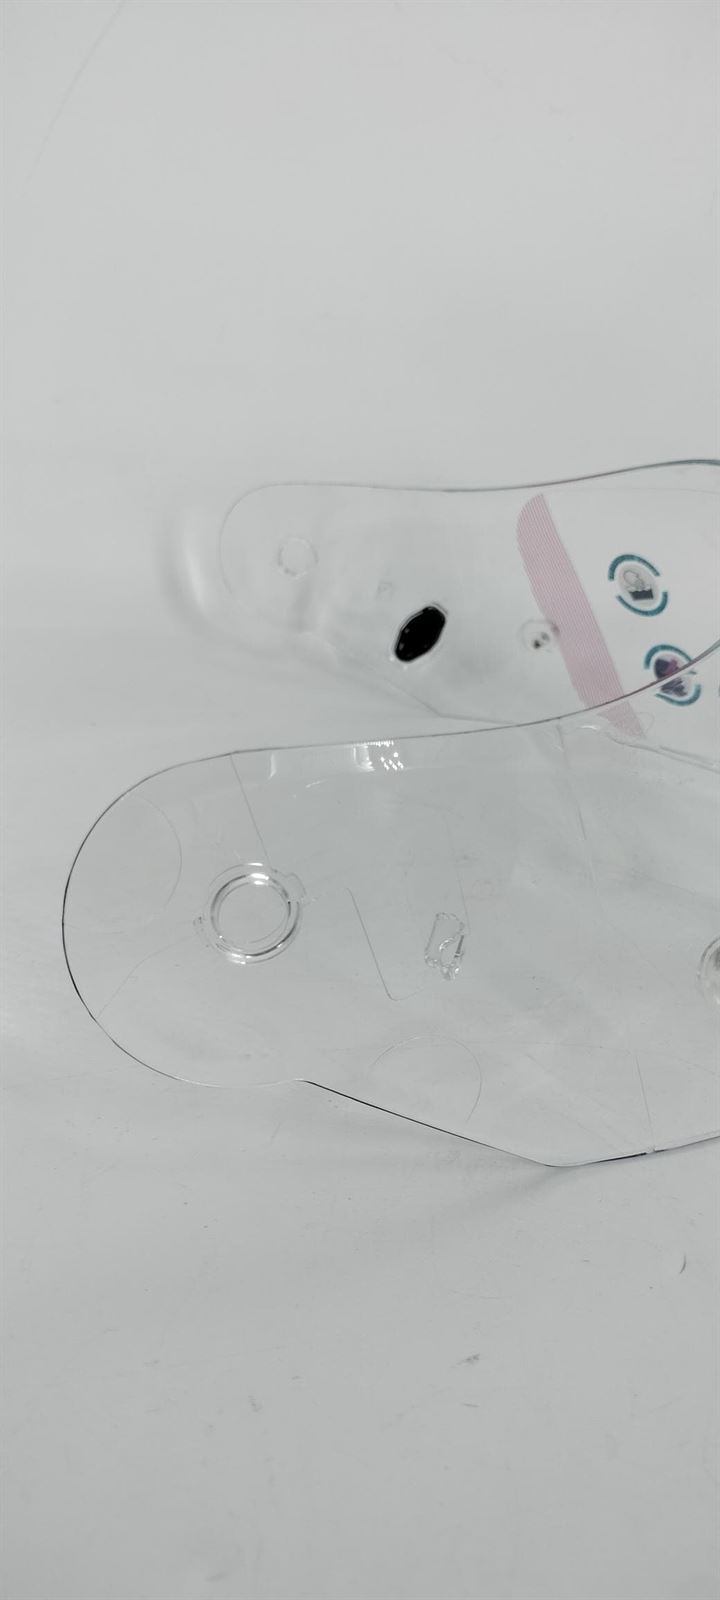 Pantalla casco integral Shiro SH-890 / SH-336 transparente - Imagen 3